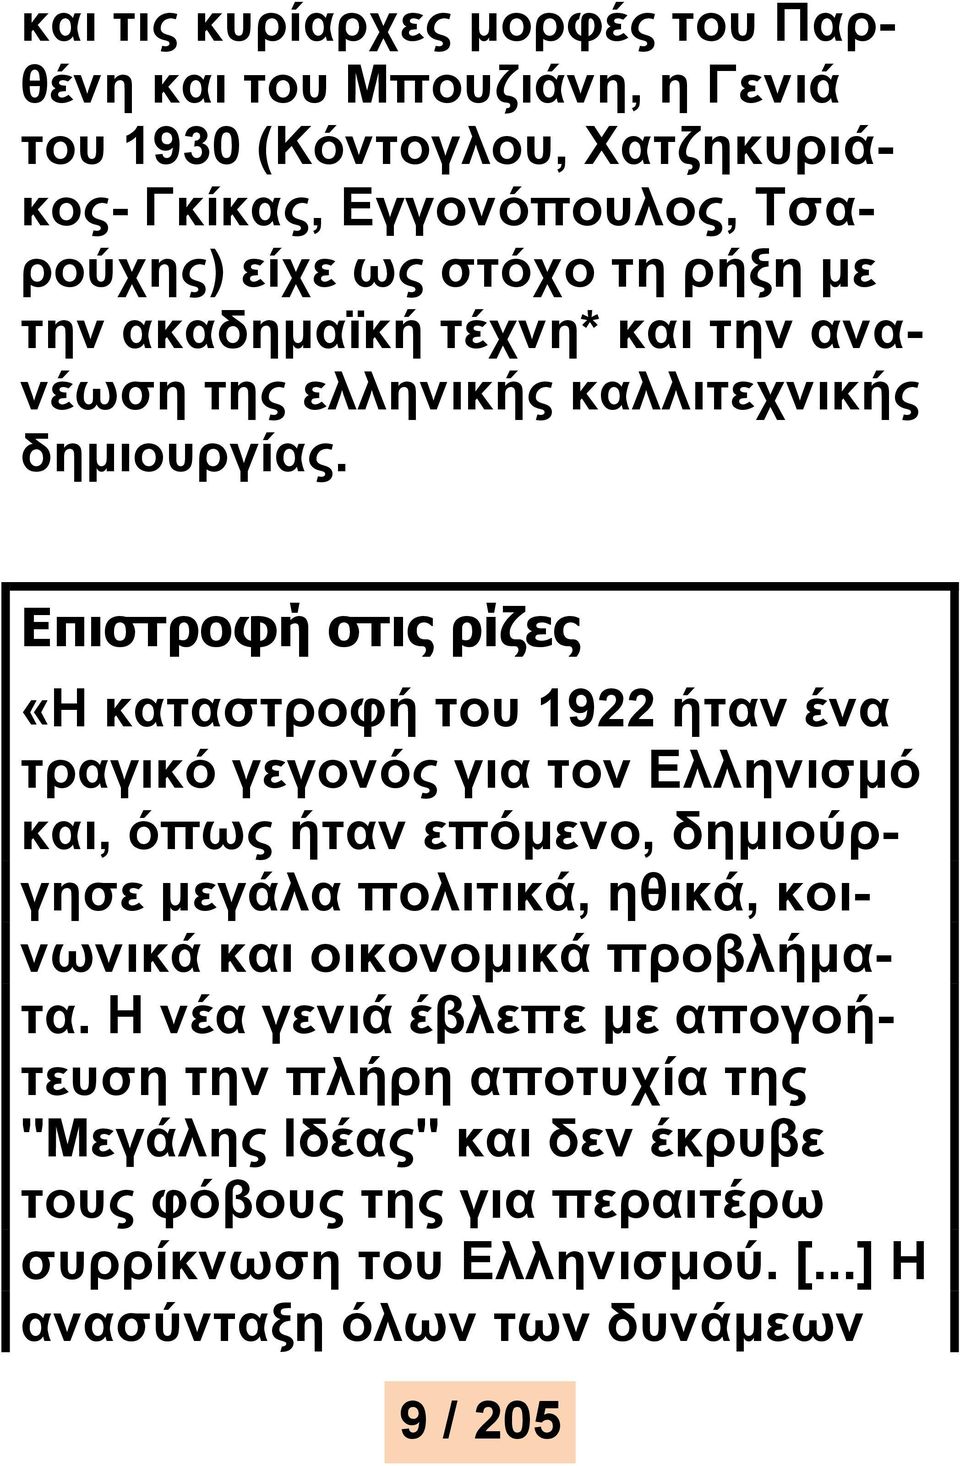 Επιστροφή στις ρίζες «Η καταστροφή του 1922 ήταν ένα τραγικό γεγονός για τον Ελληνισμό και, όπως ήταν επόμενο, δημιούργησε μεγάλα πολιτικά, ηθικά,